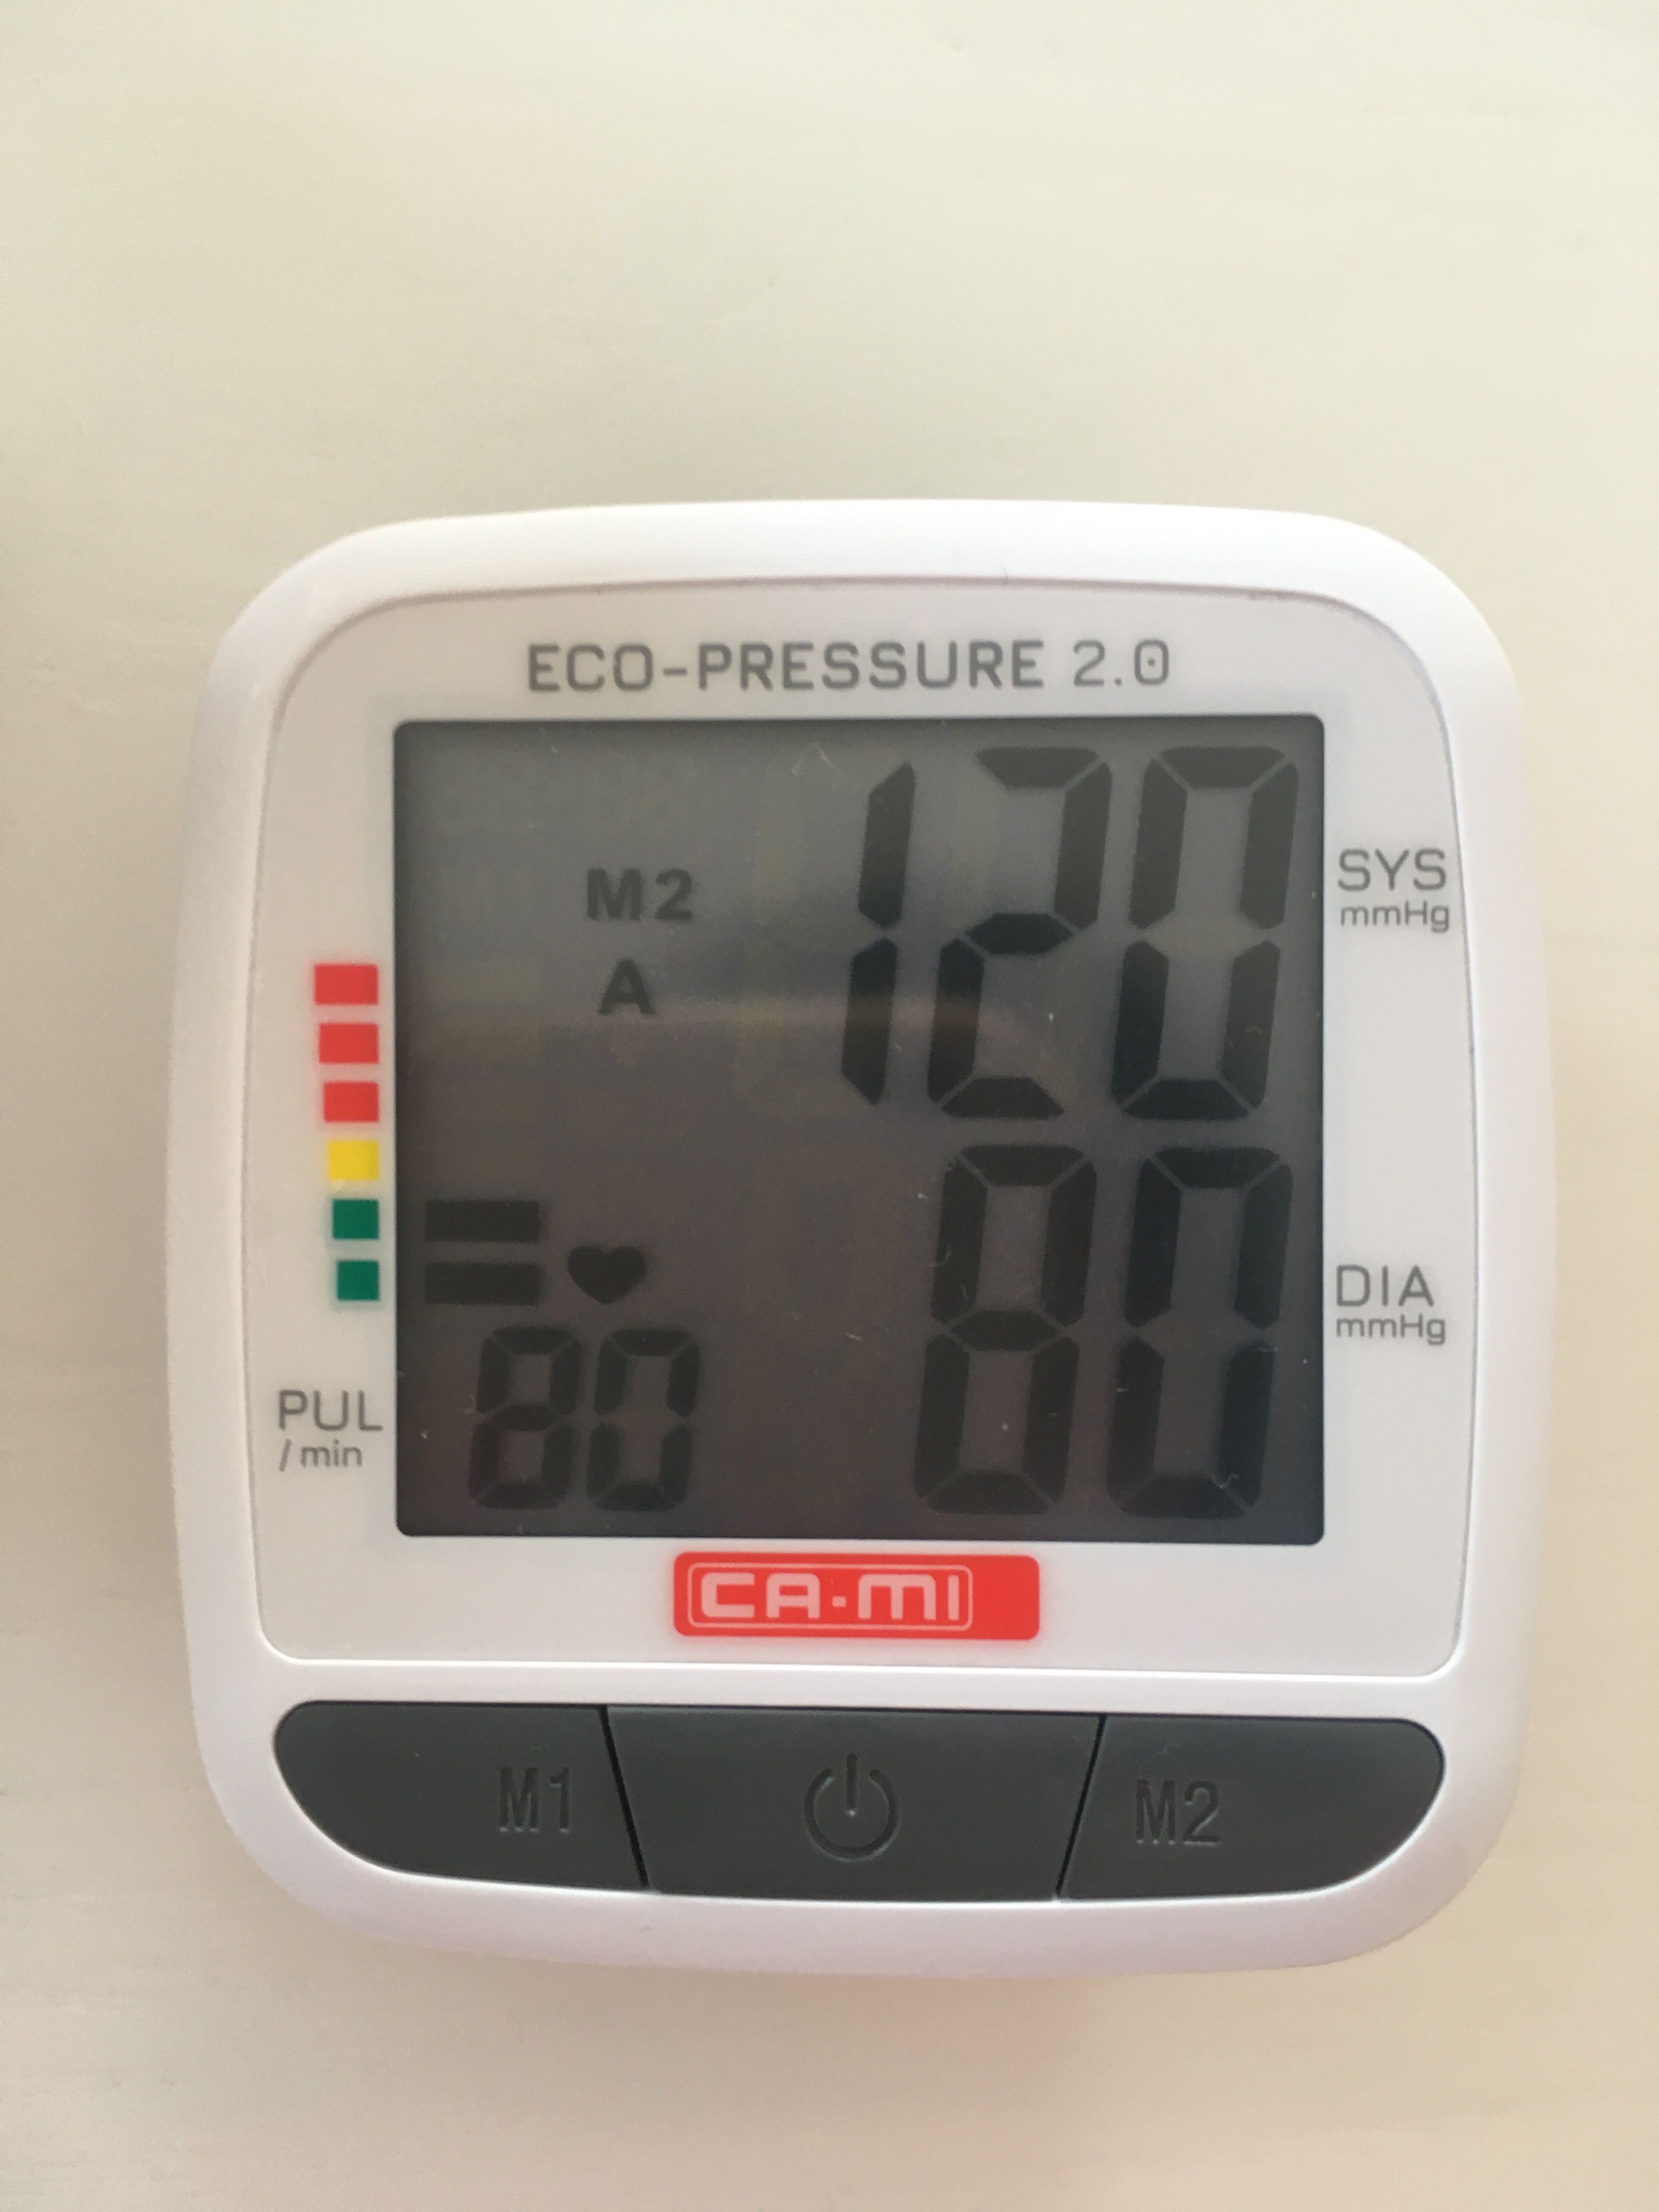 Ciśnieniomierz nadgarstkowy ca-mi eco-pressure 2.0